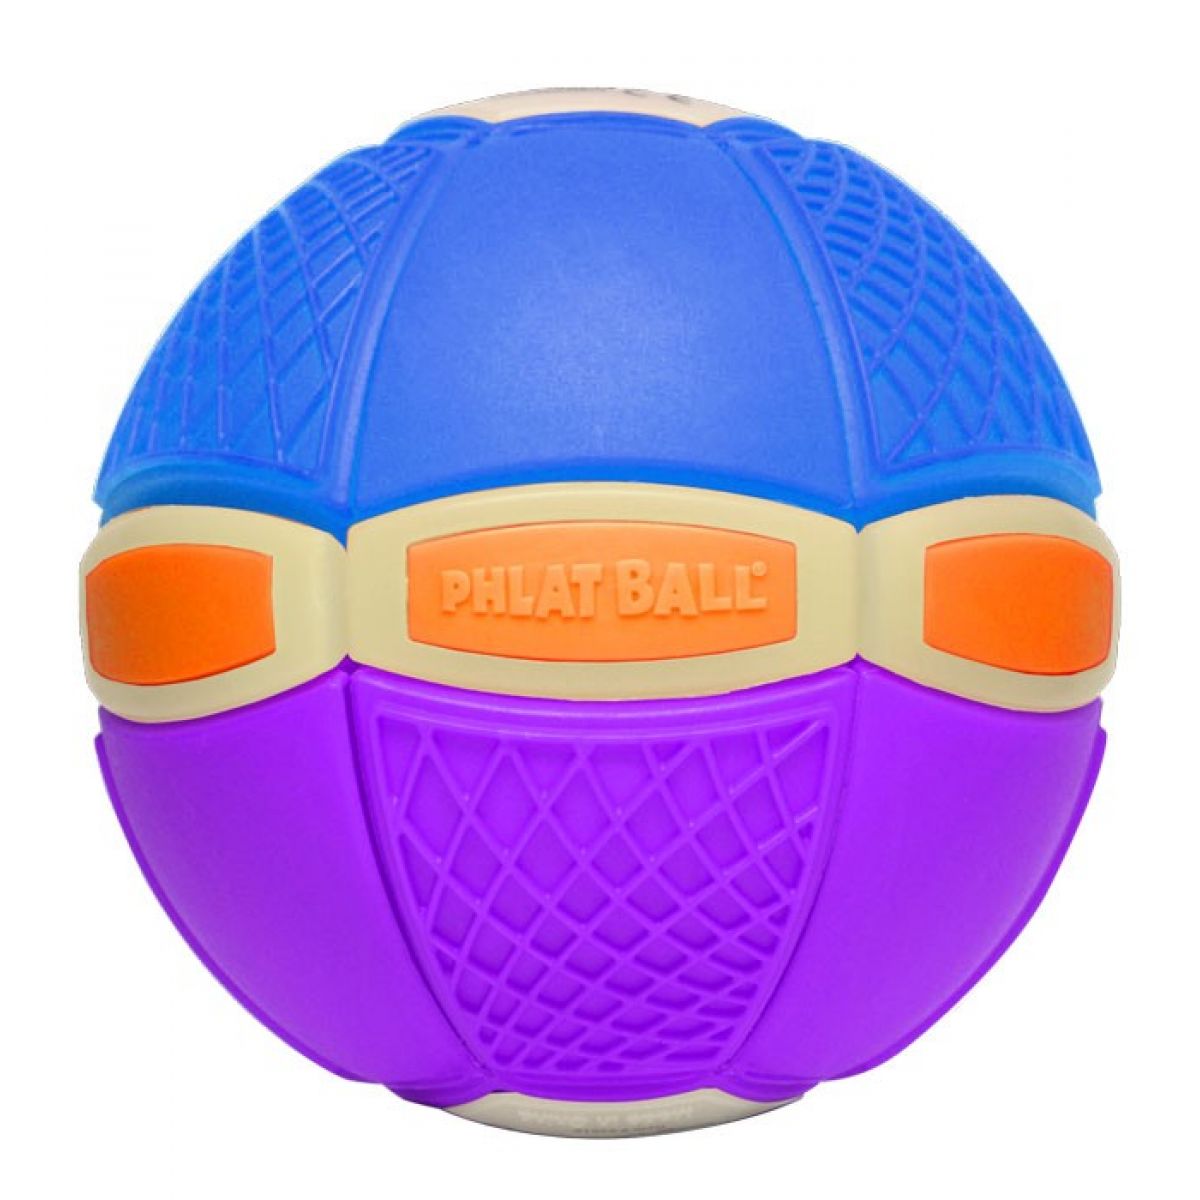 Phlat Ball JR. Svítící ve tmě - Fialovo-modrá